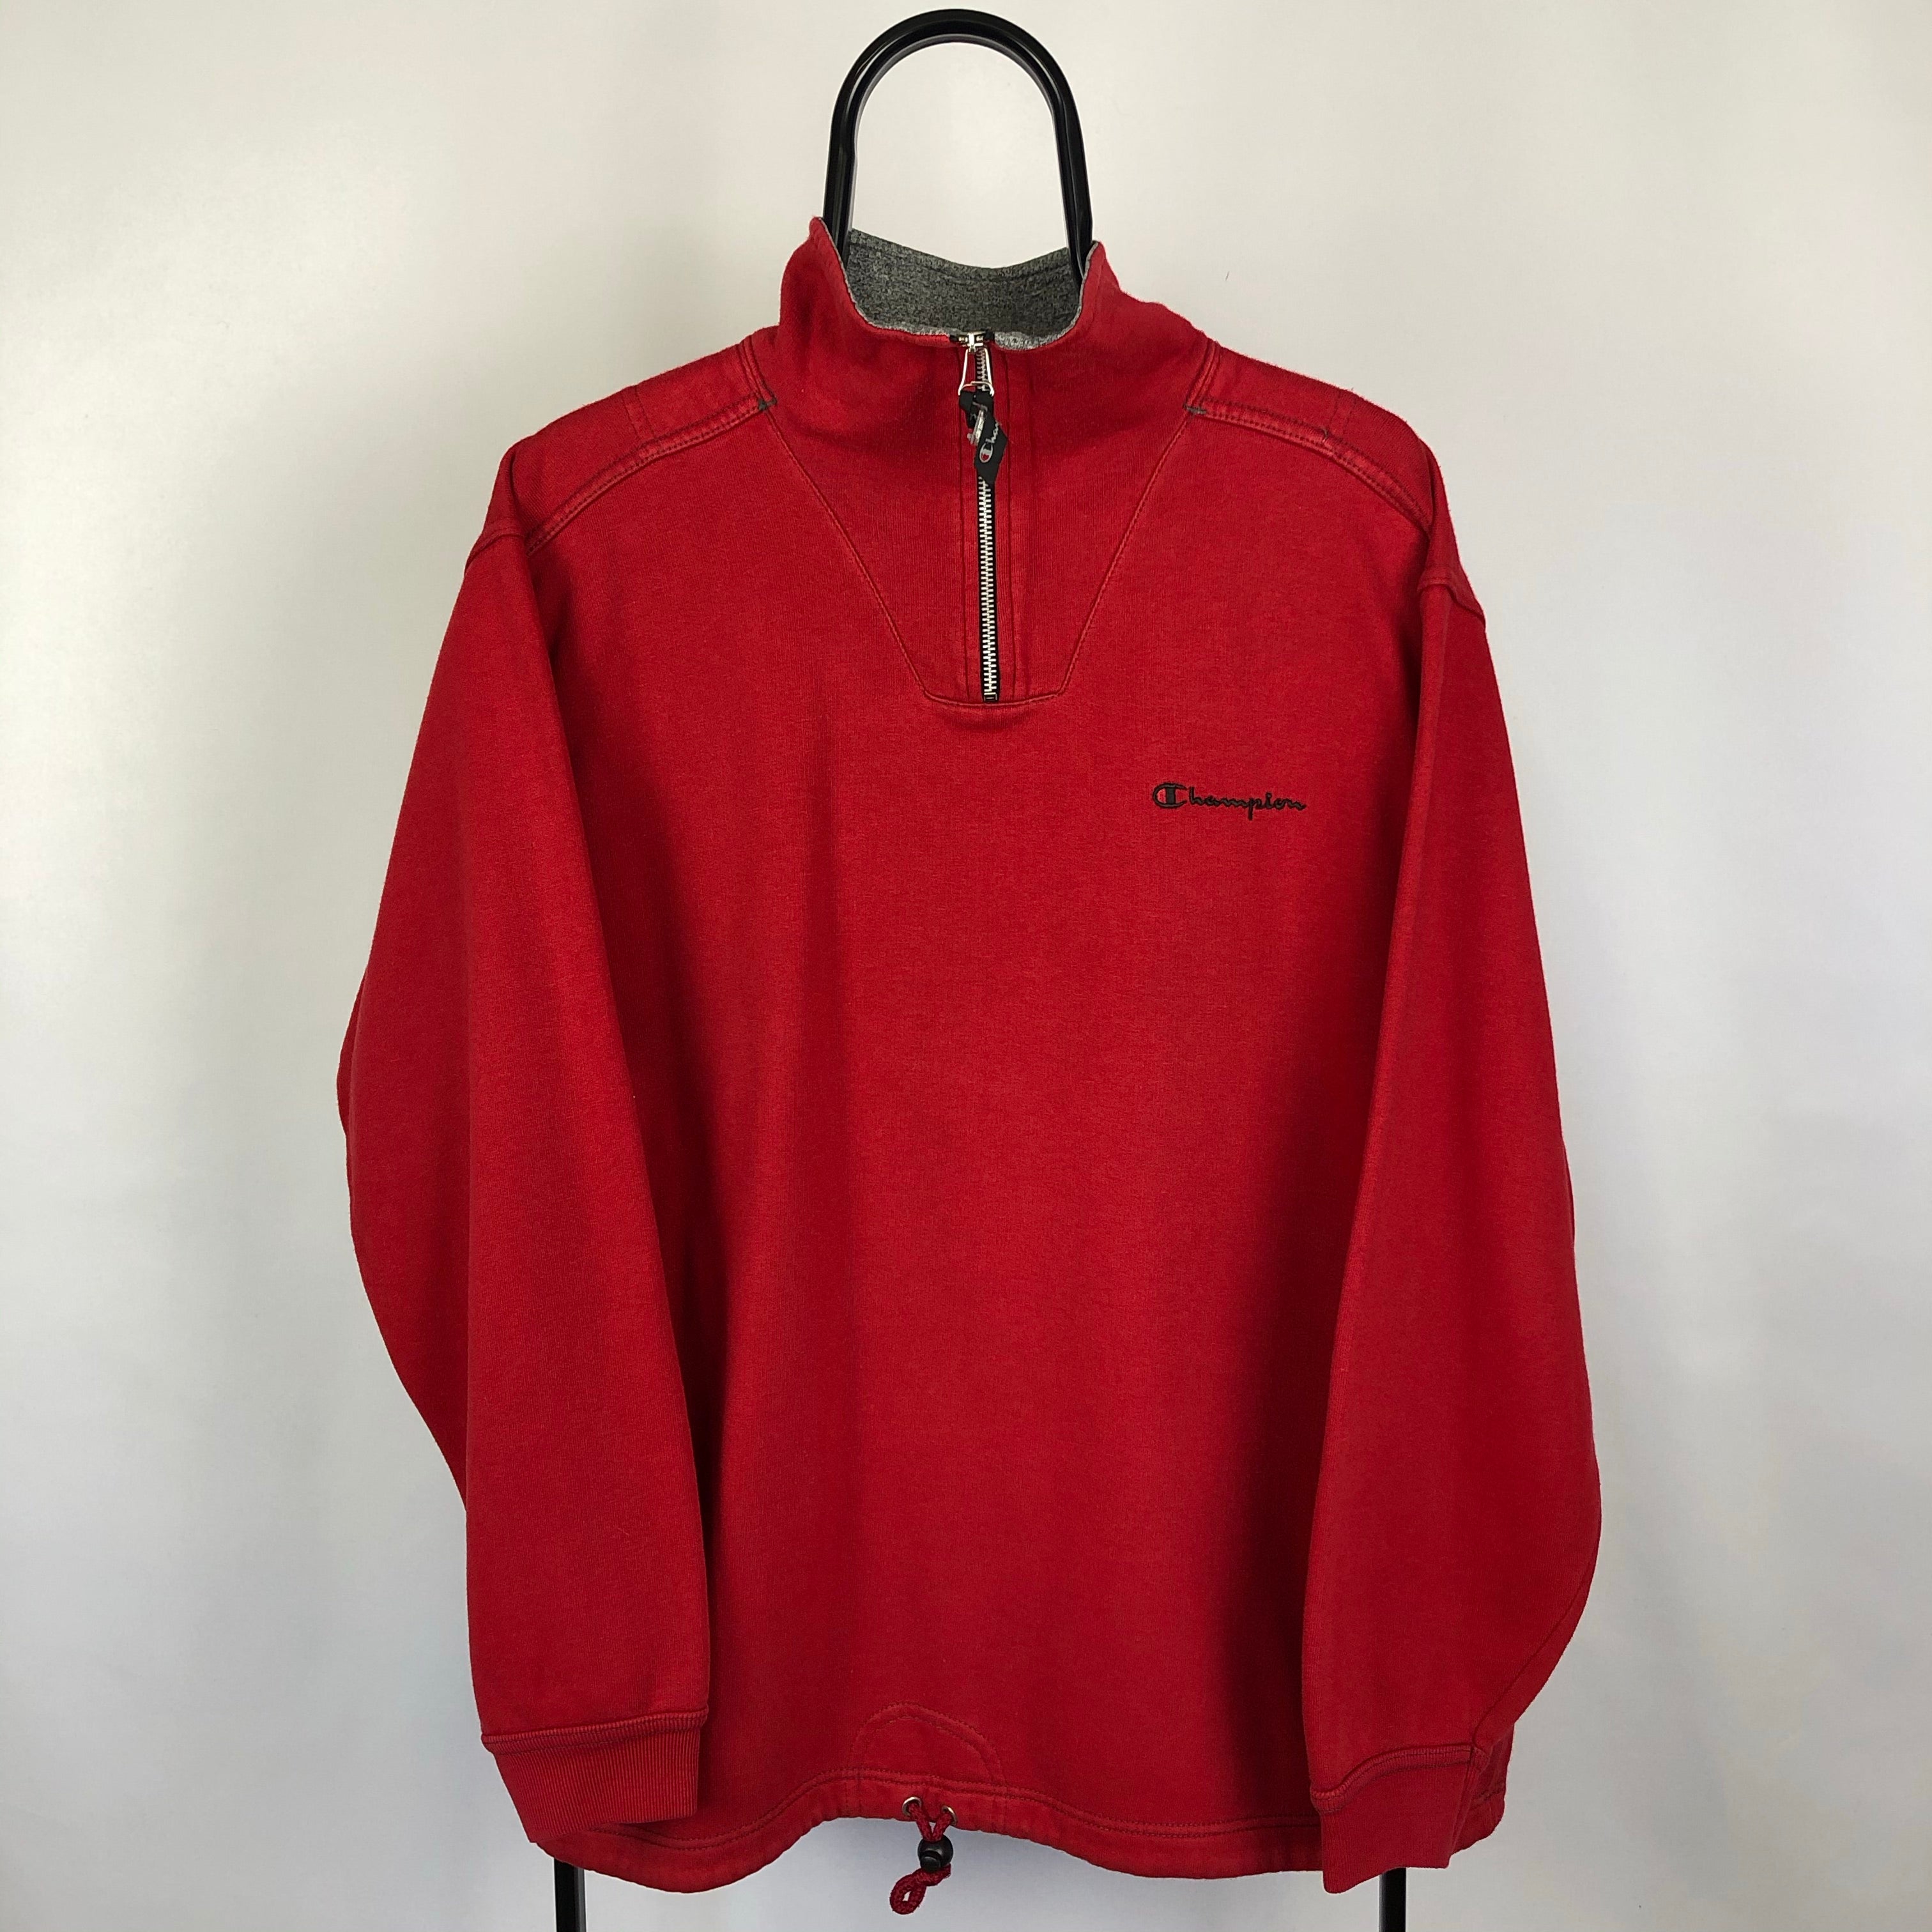 Vintage Champion 1/4 Zip Sweatshirt in Red - Men’s Medium/Women’s Larg ...